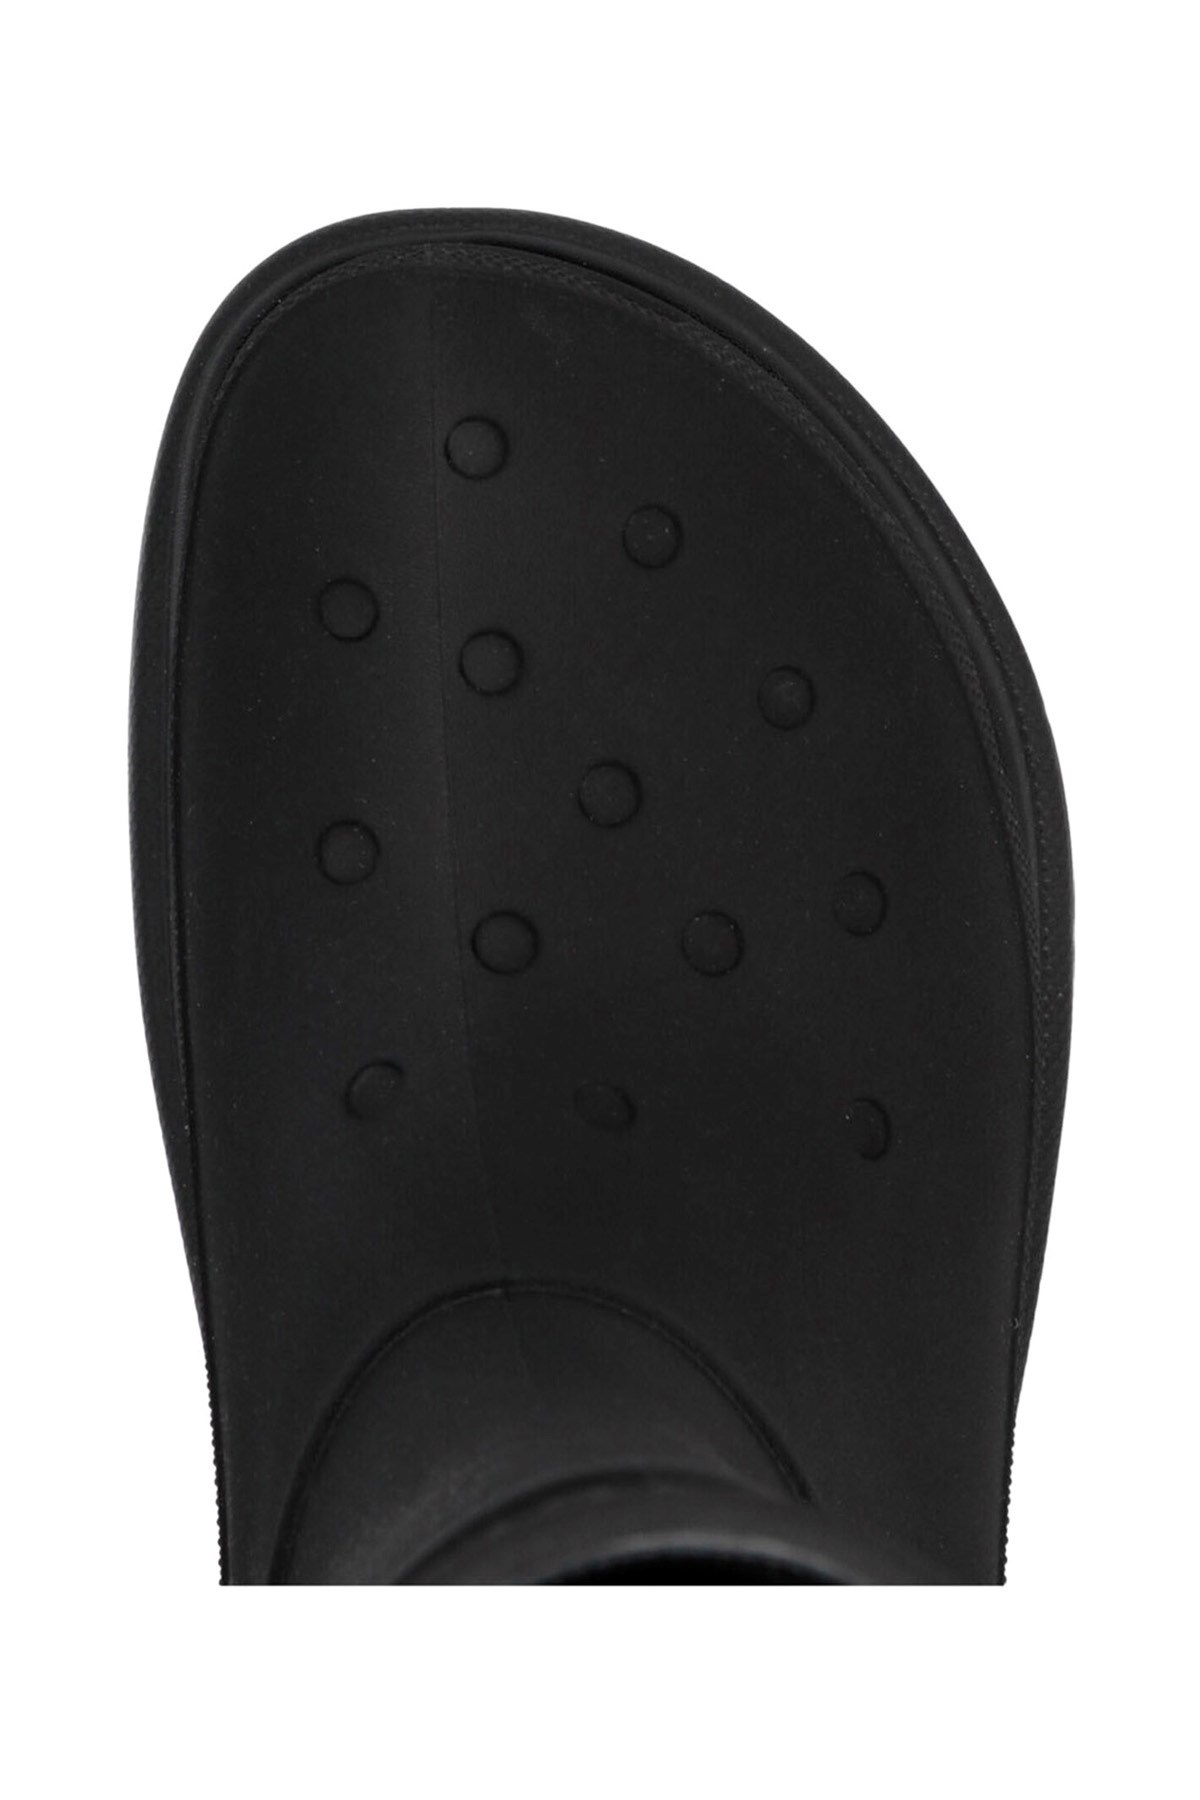 Balenciaga x Crocs boots - 4